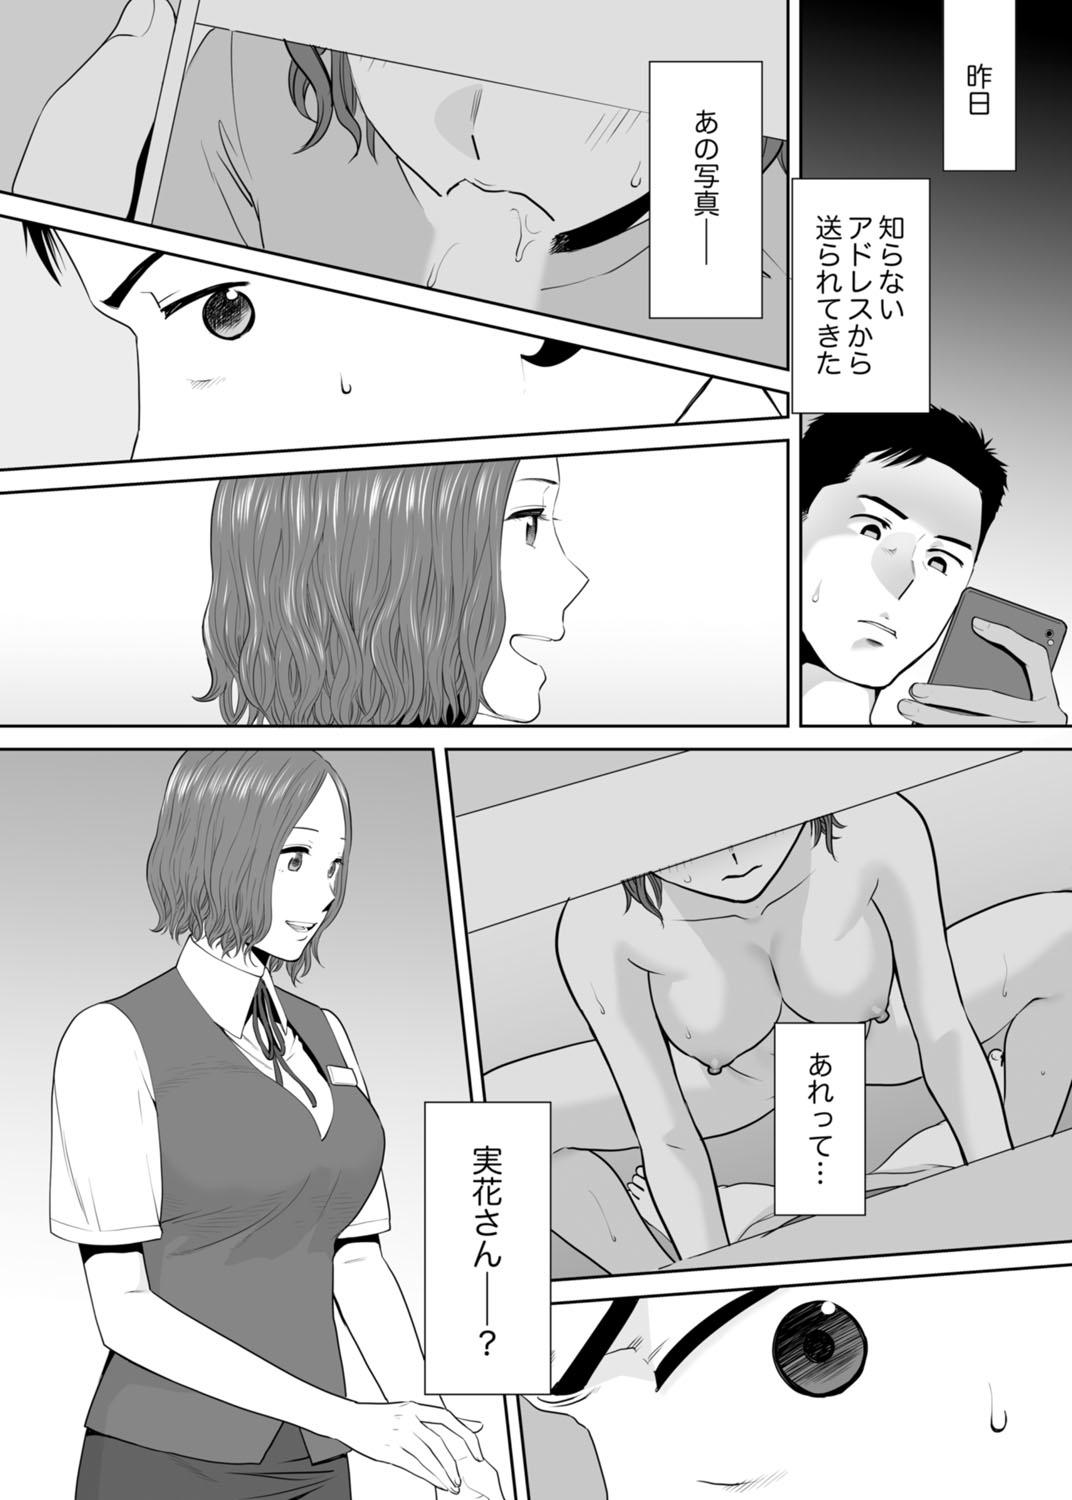 Longhair "Otto no Buka ni Ikasarechau..." Aragaezu Kanjite Shimau Furinzuma 11 8teen - Page 4